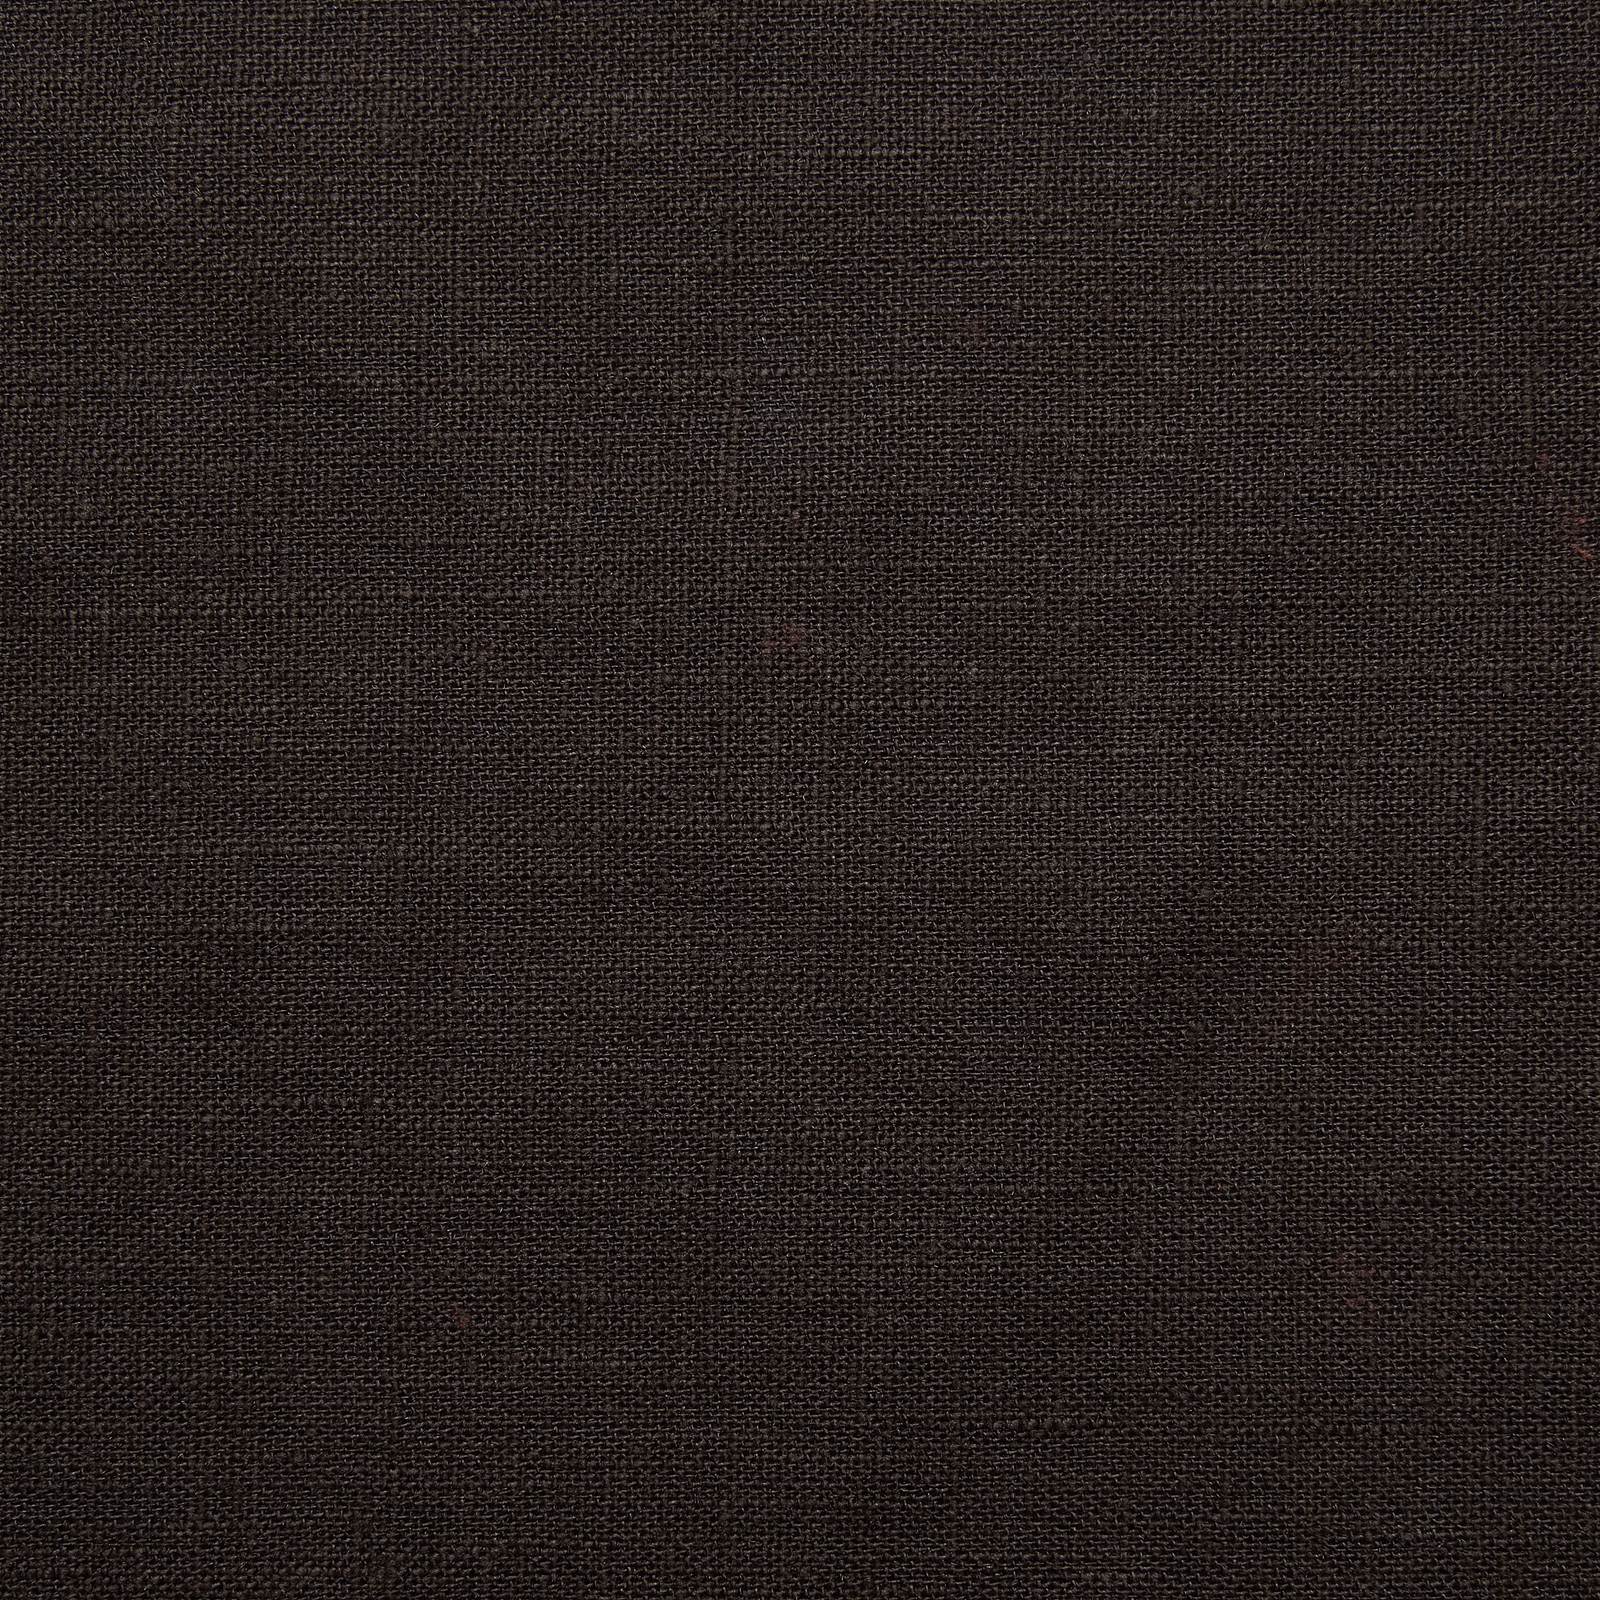 Authentic øko-linned CLASSIC - Mørk mokka